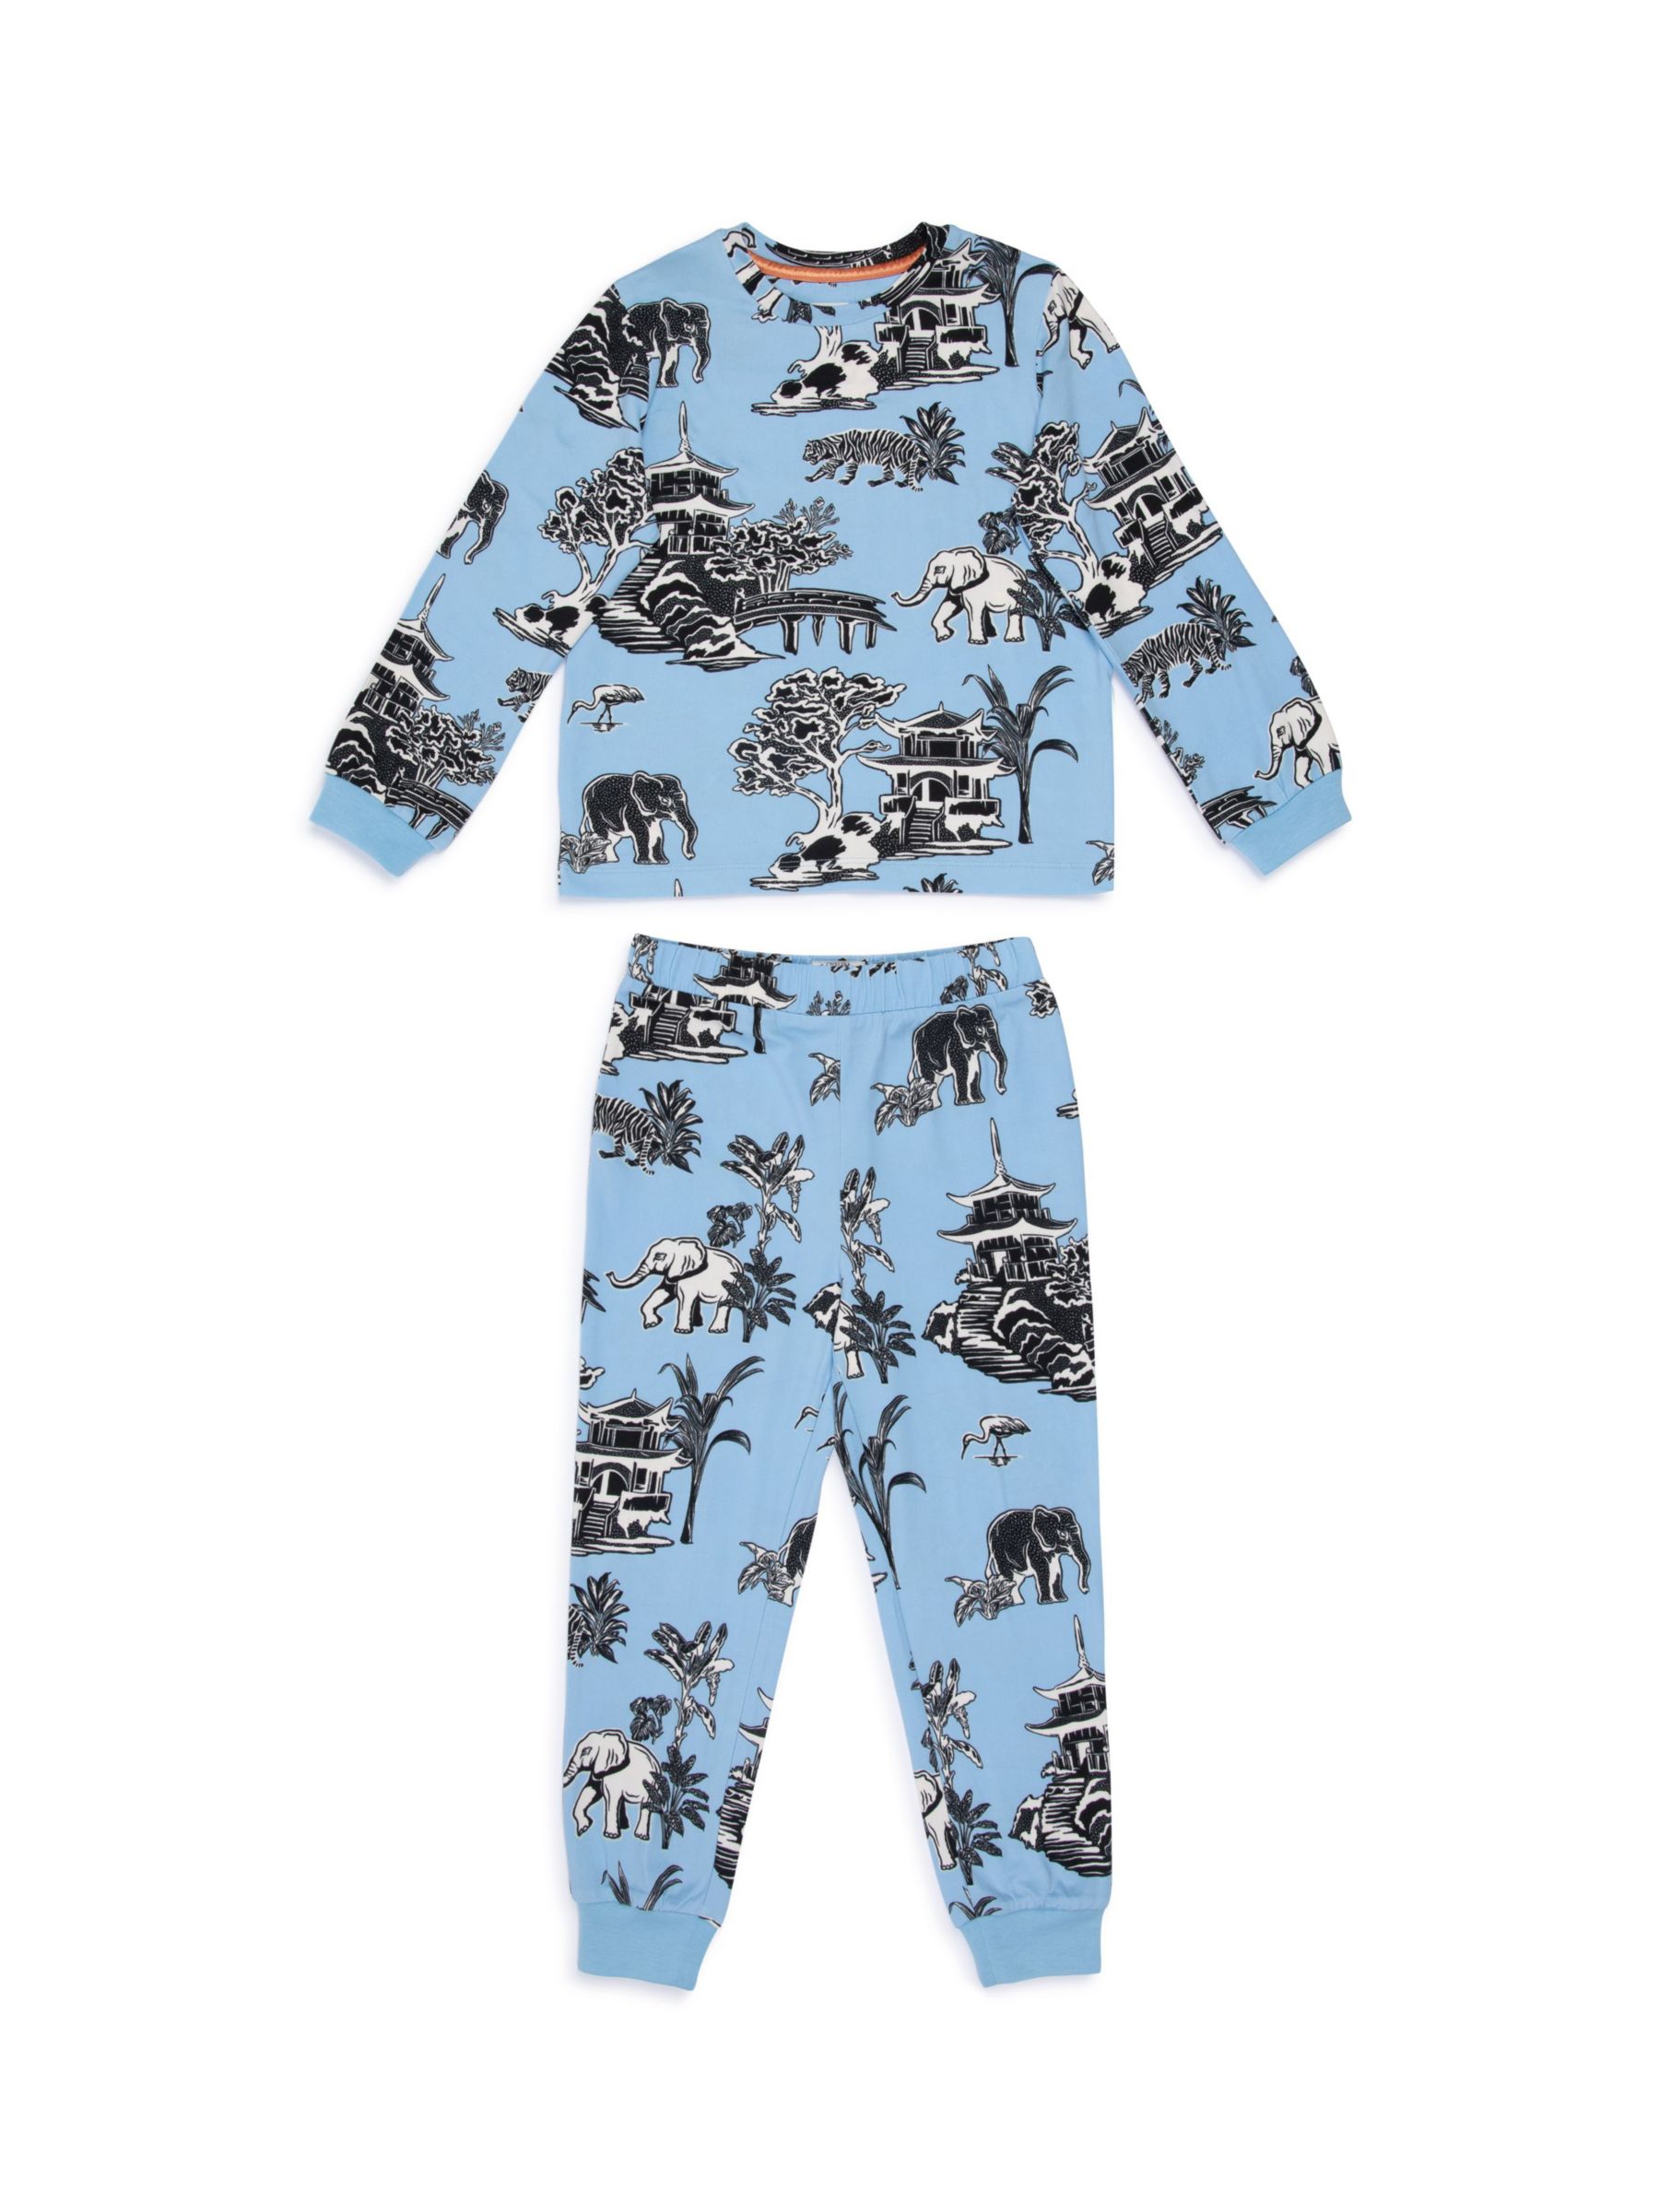 Chelsea Peers Kids' Animal Garden Print Long Pyjama Set, Blue/Multi, 9-10 years